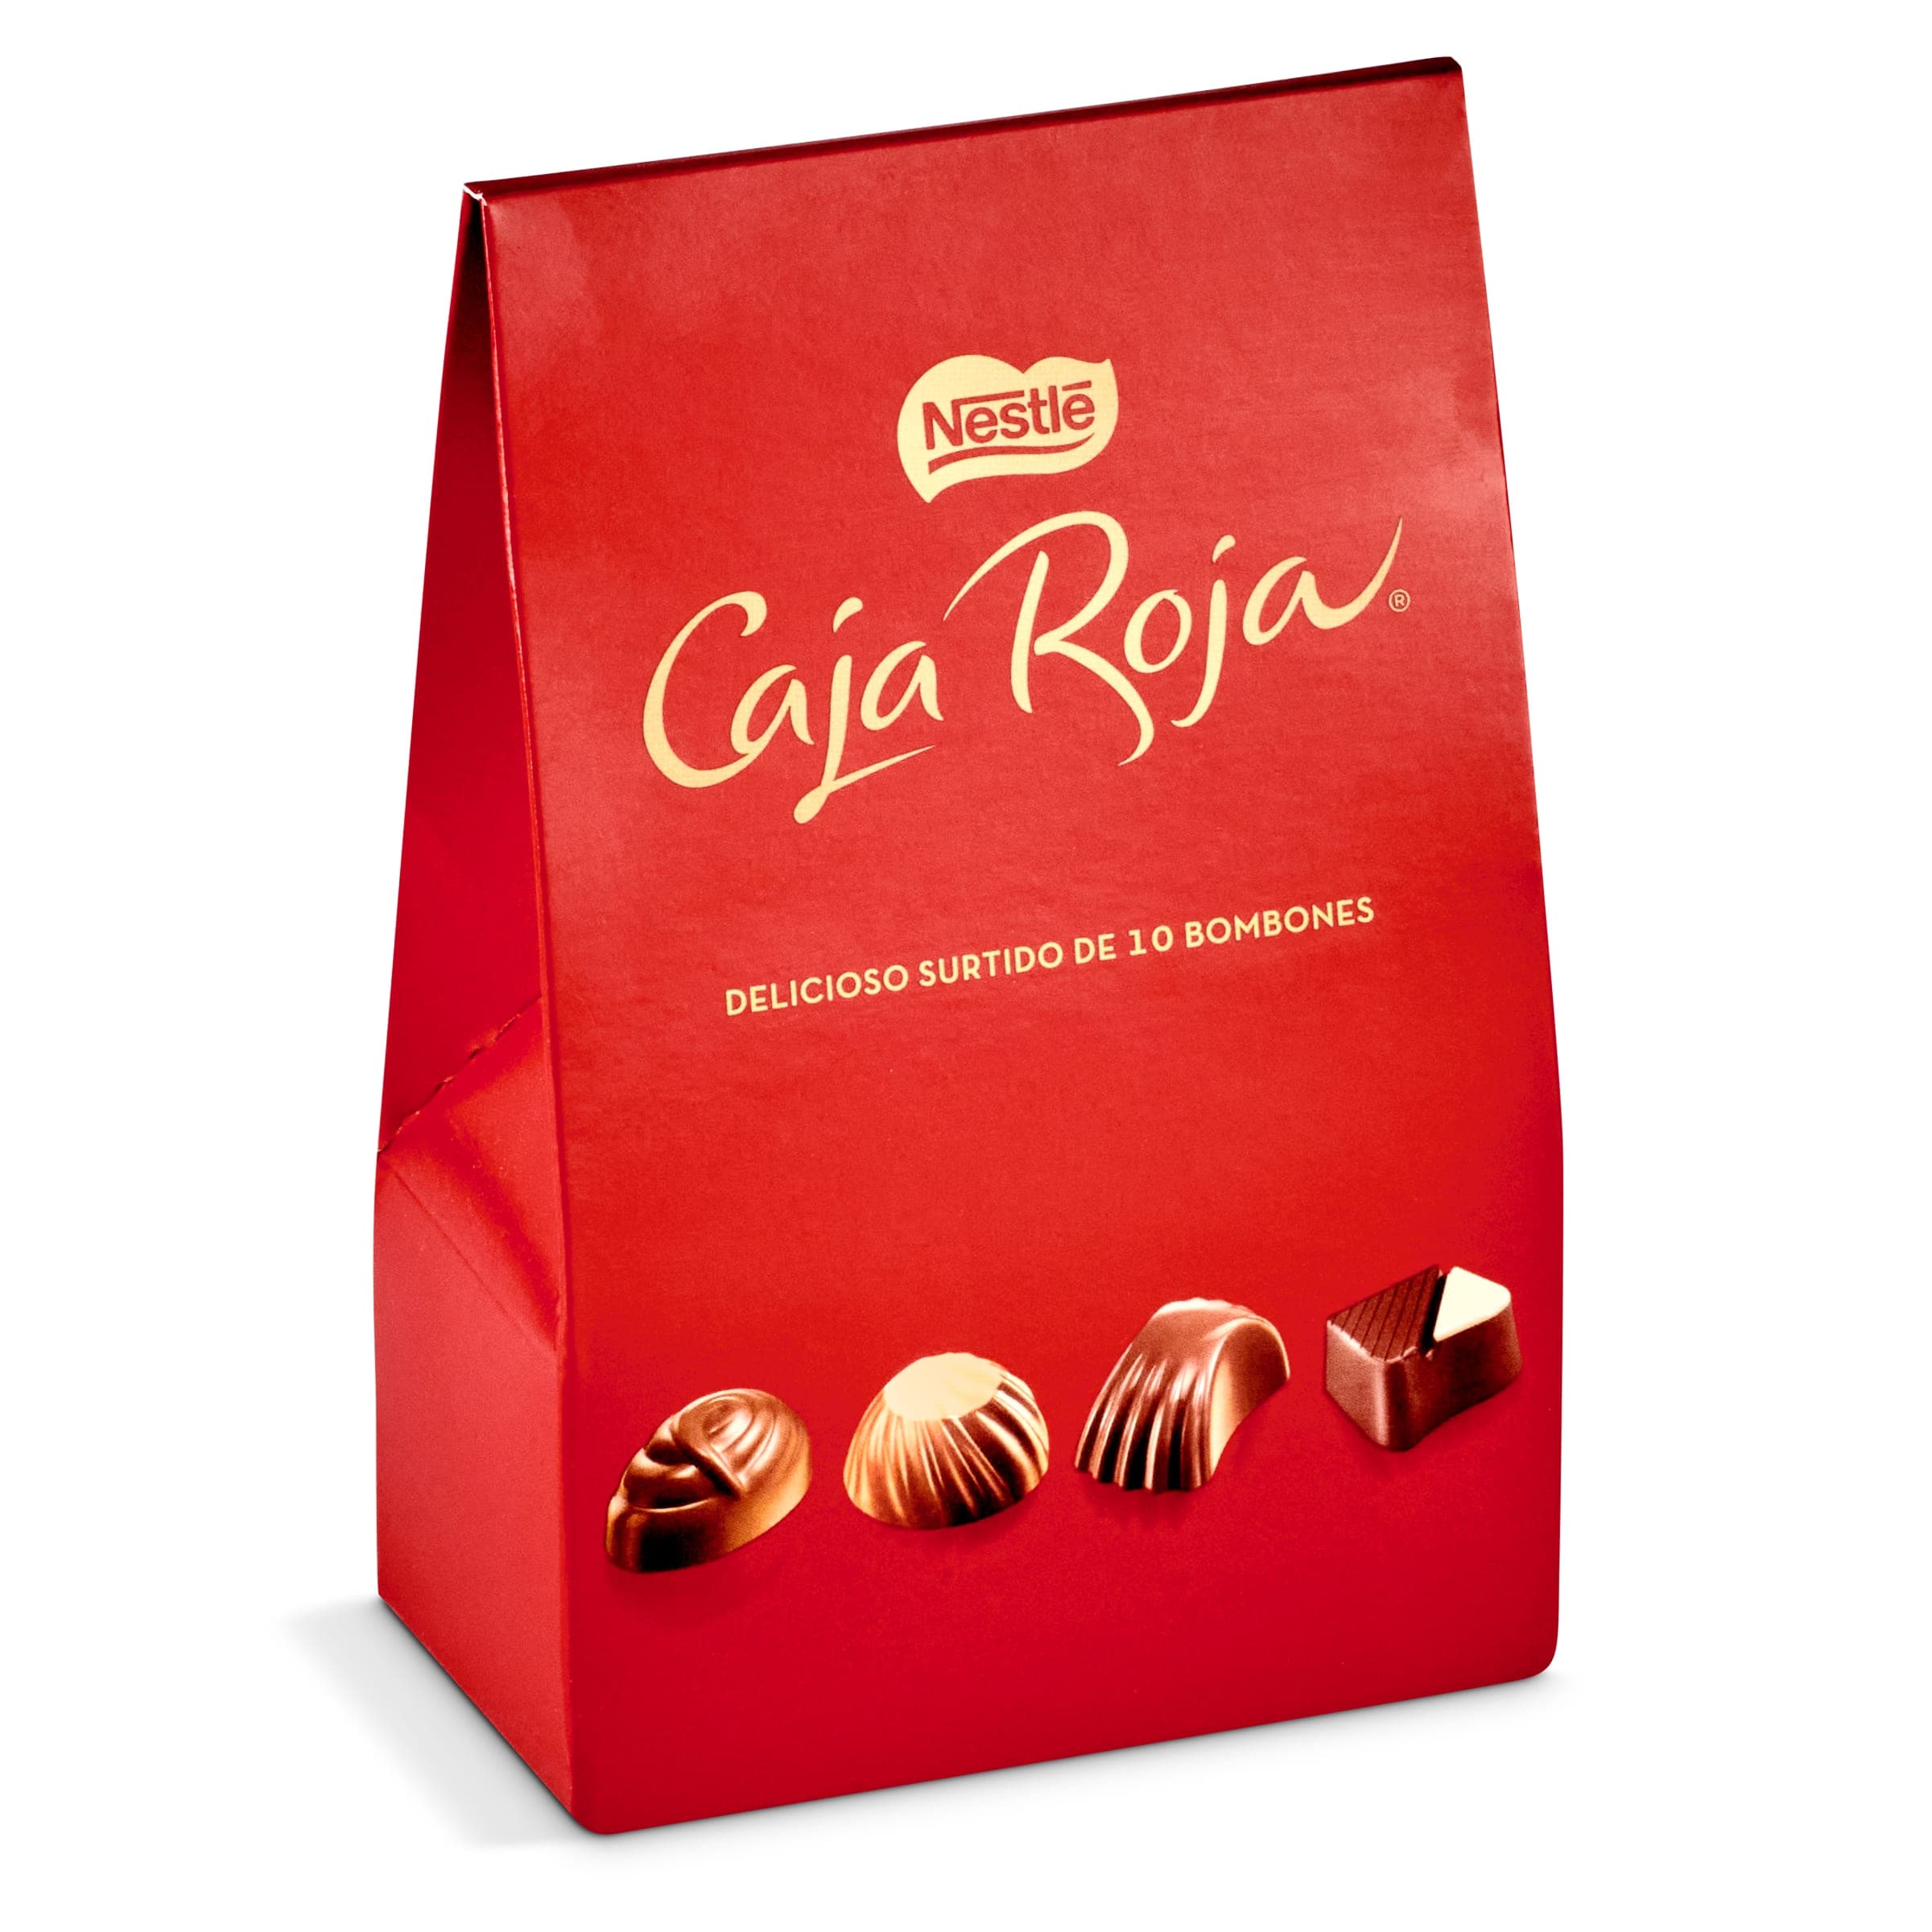 Bombones surtidos Nestlé Caja Roja caja 100 g - Supermercados DIA